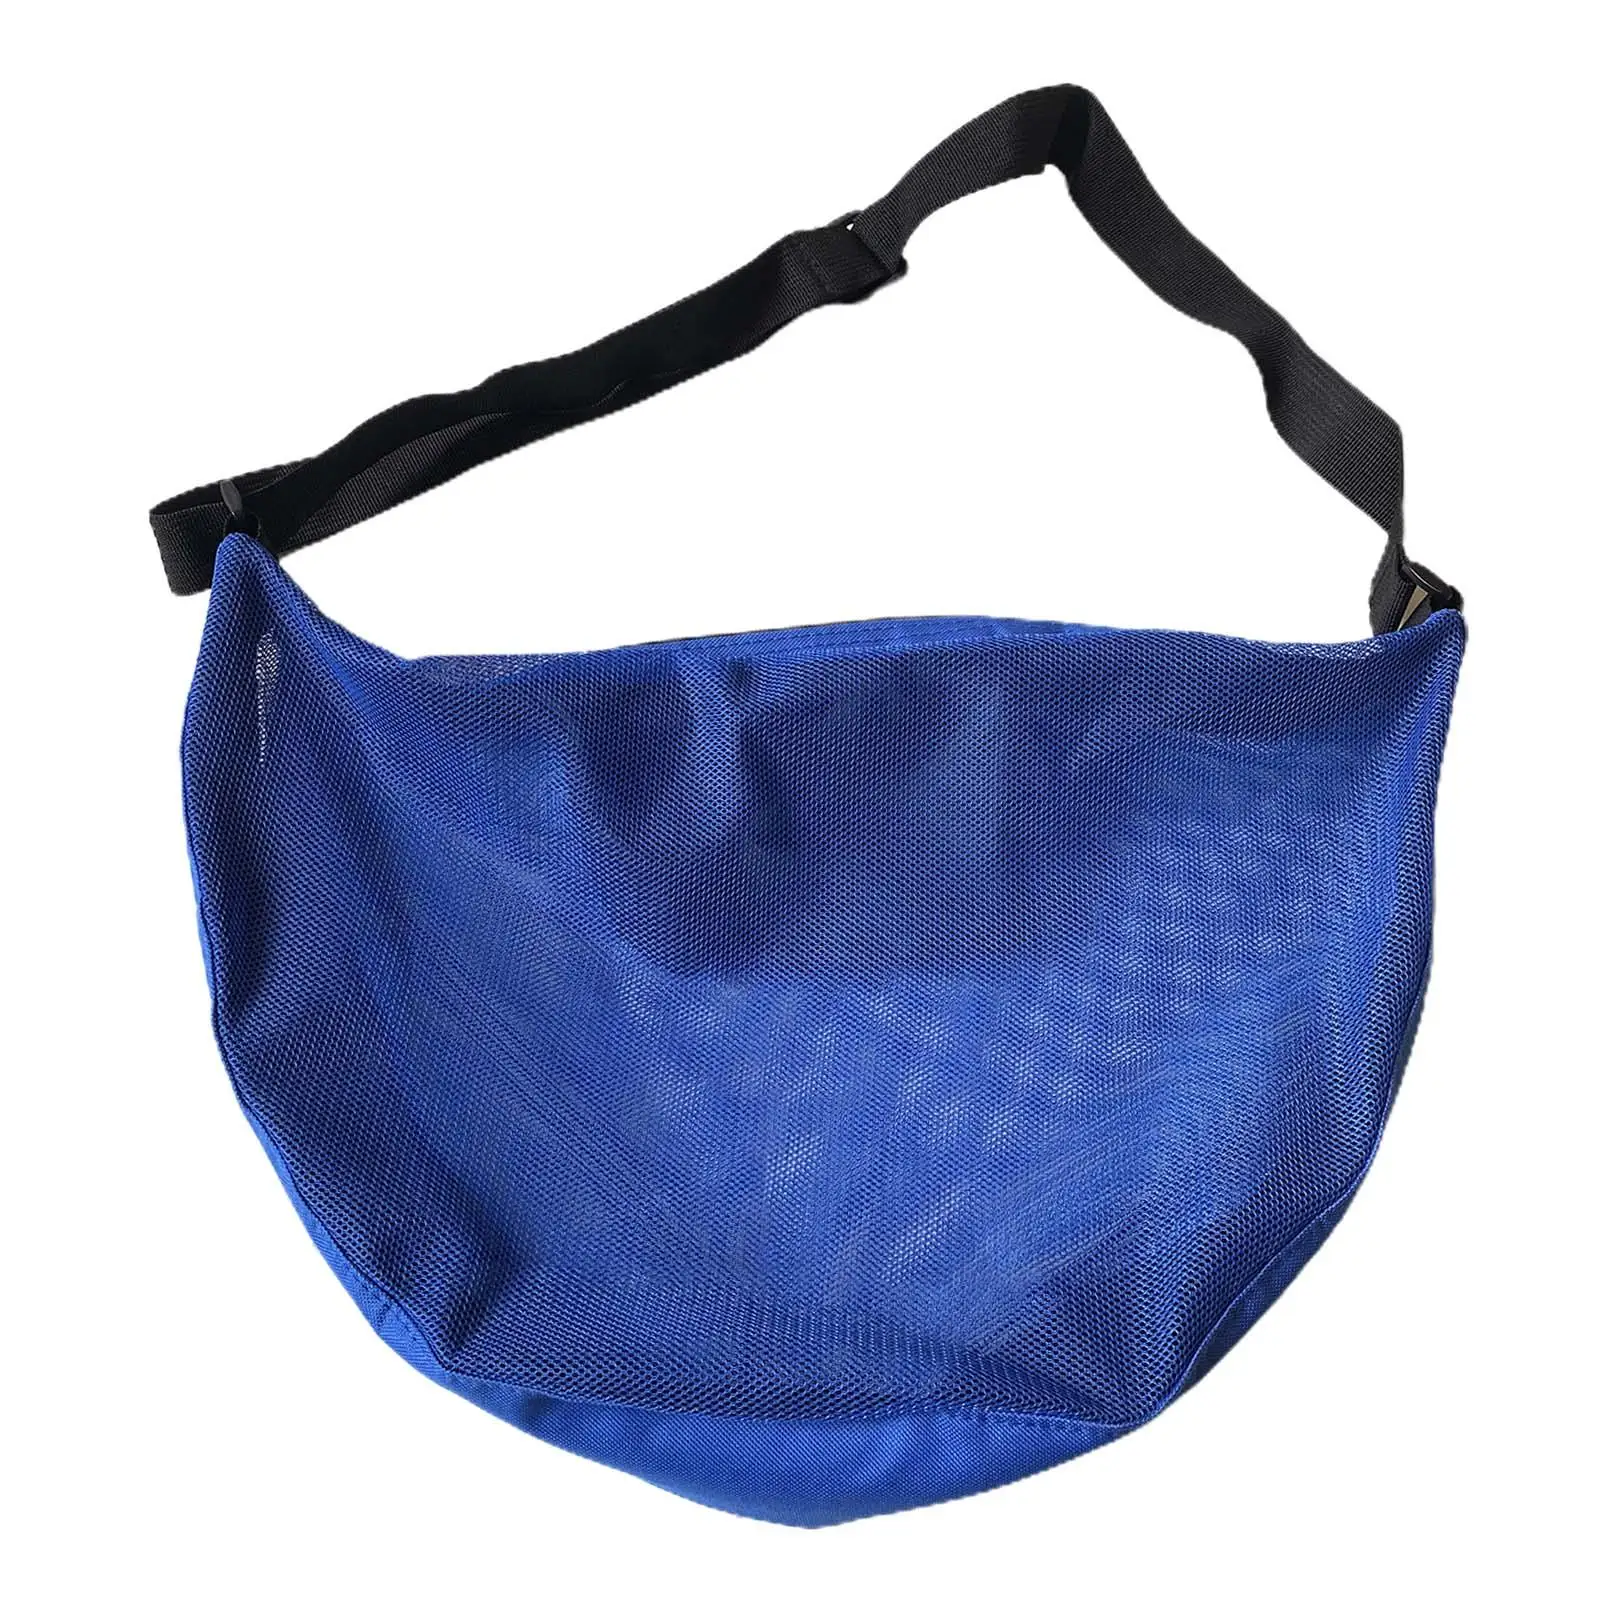 Basketball Carry Bag Balls Bags Mesh Adjustable Shoulder Strap Carrying Bag